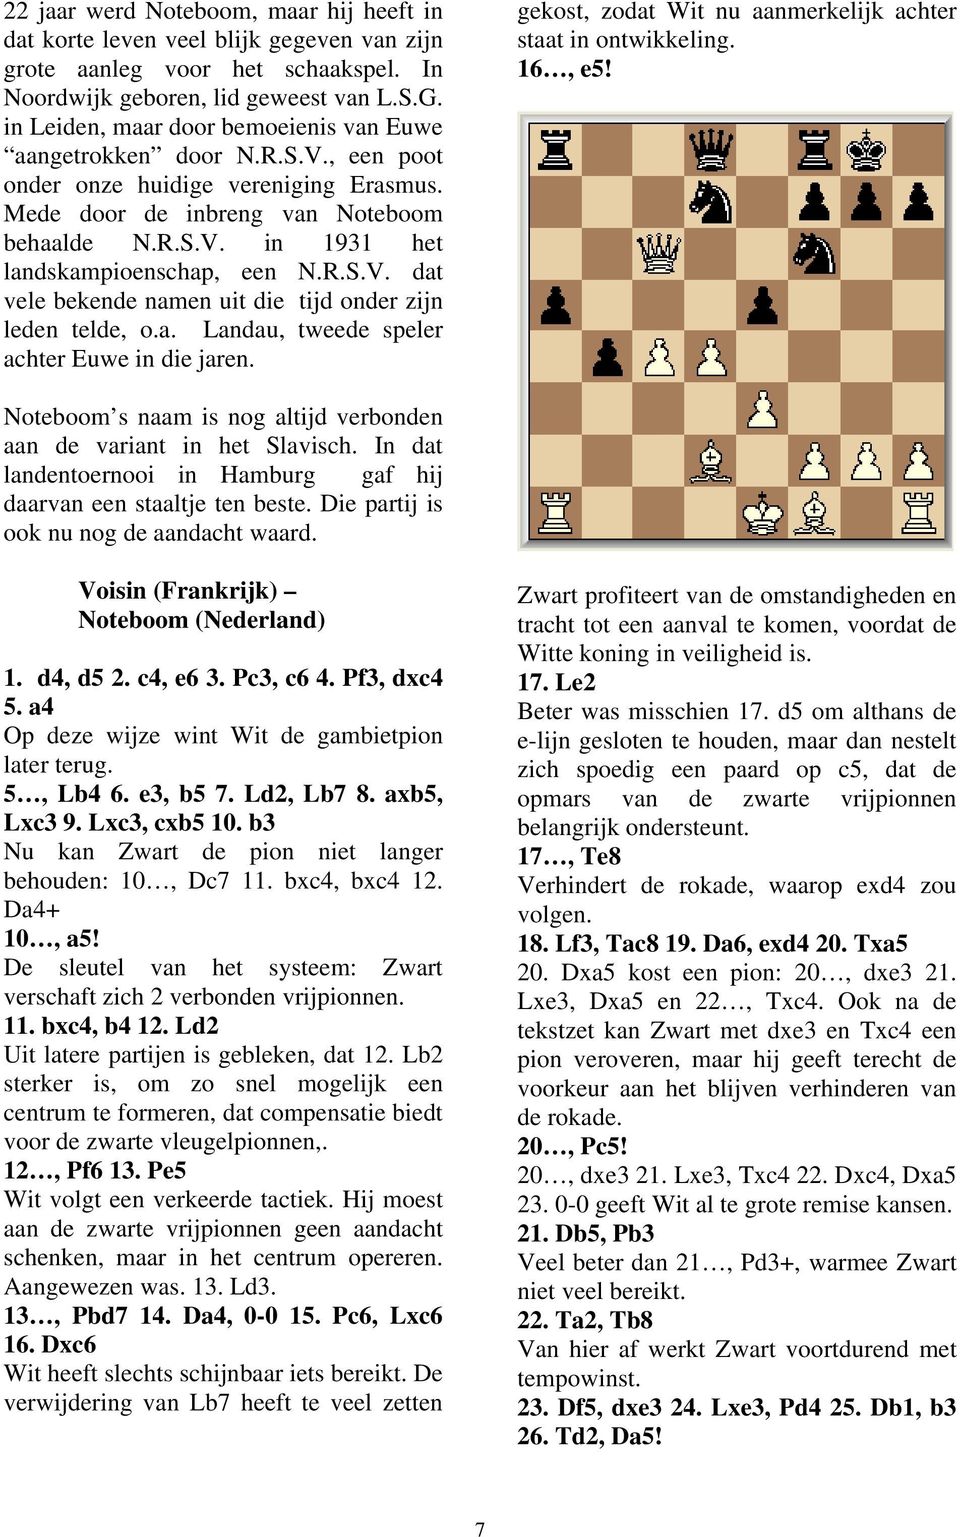 R.S.V. dat vele bekende namen uit die tijd onder zijn leden telde, o.a. Landau, tweede speler achter Euwe in die jaren. gekost, zodat Wit nu aanmerkelijk achter staat in ontwikkeling. 16, e5!